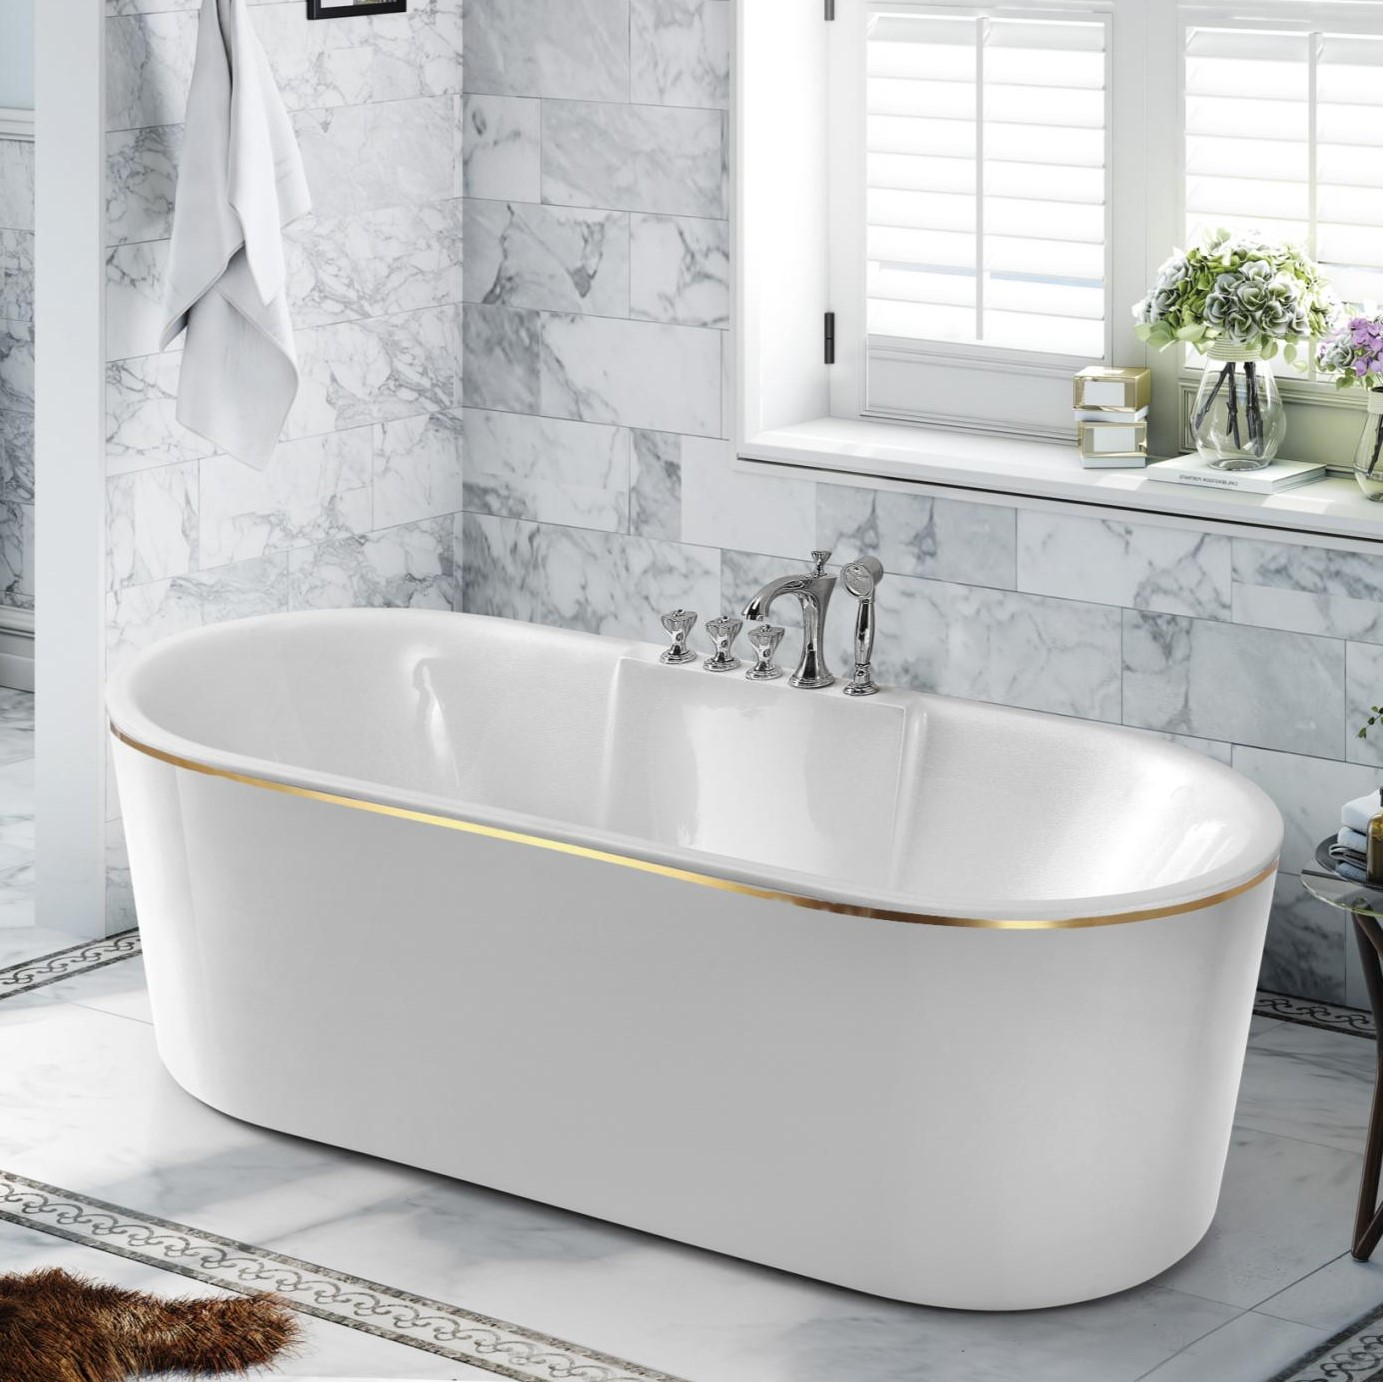 新品家用卫生间独立椭圆浴缸欧式一体亚力克浴盆小户型浴池简约